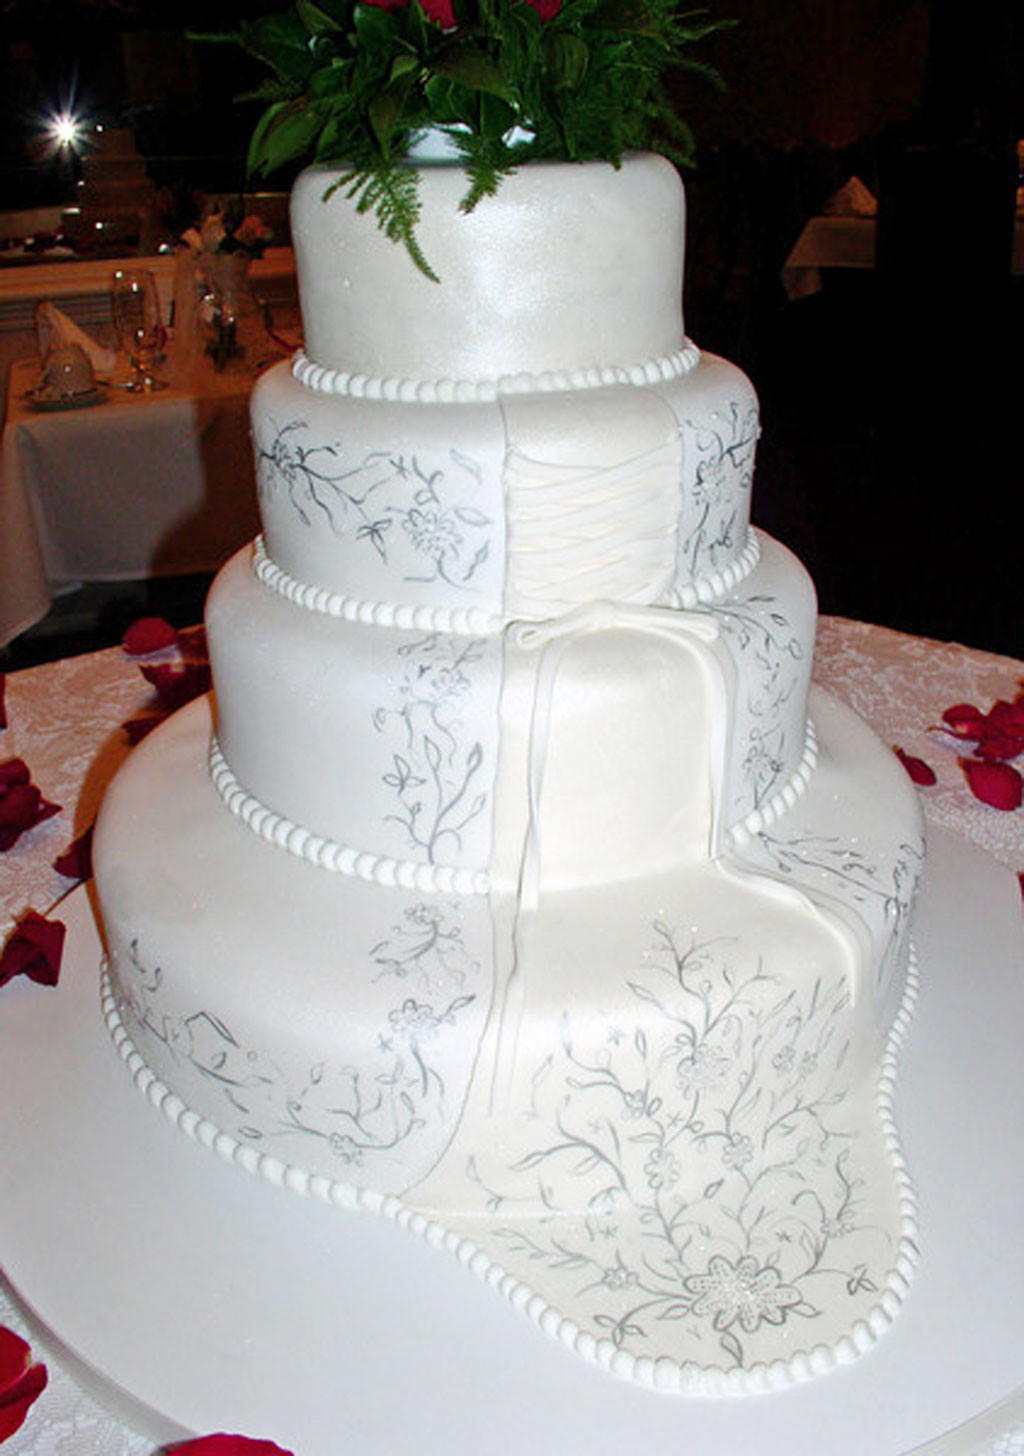 Wedding Cakes In Richmond Va 20 Ideas for White Wedding Cakes Richmond Va Wedding Cake Cake Ideas